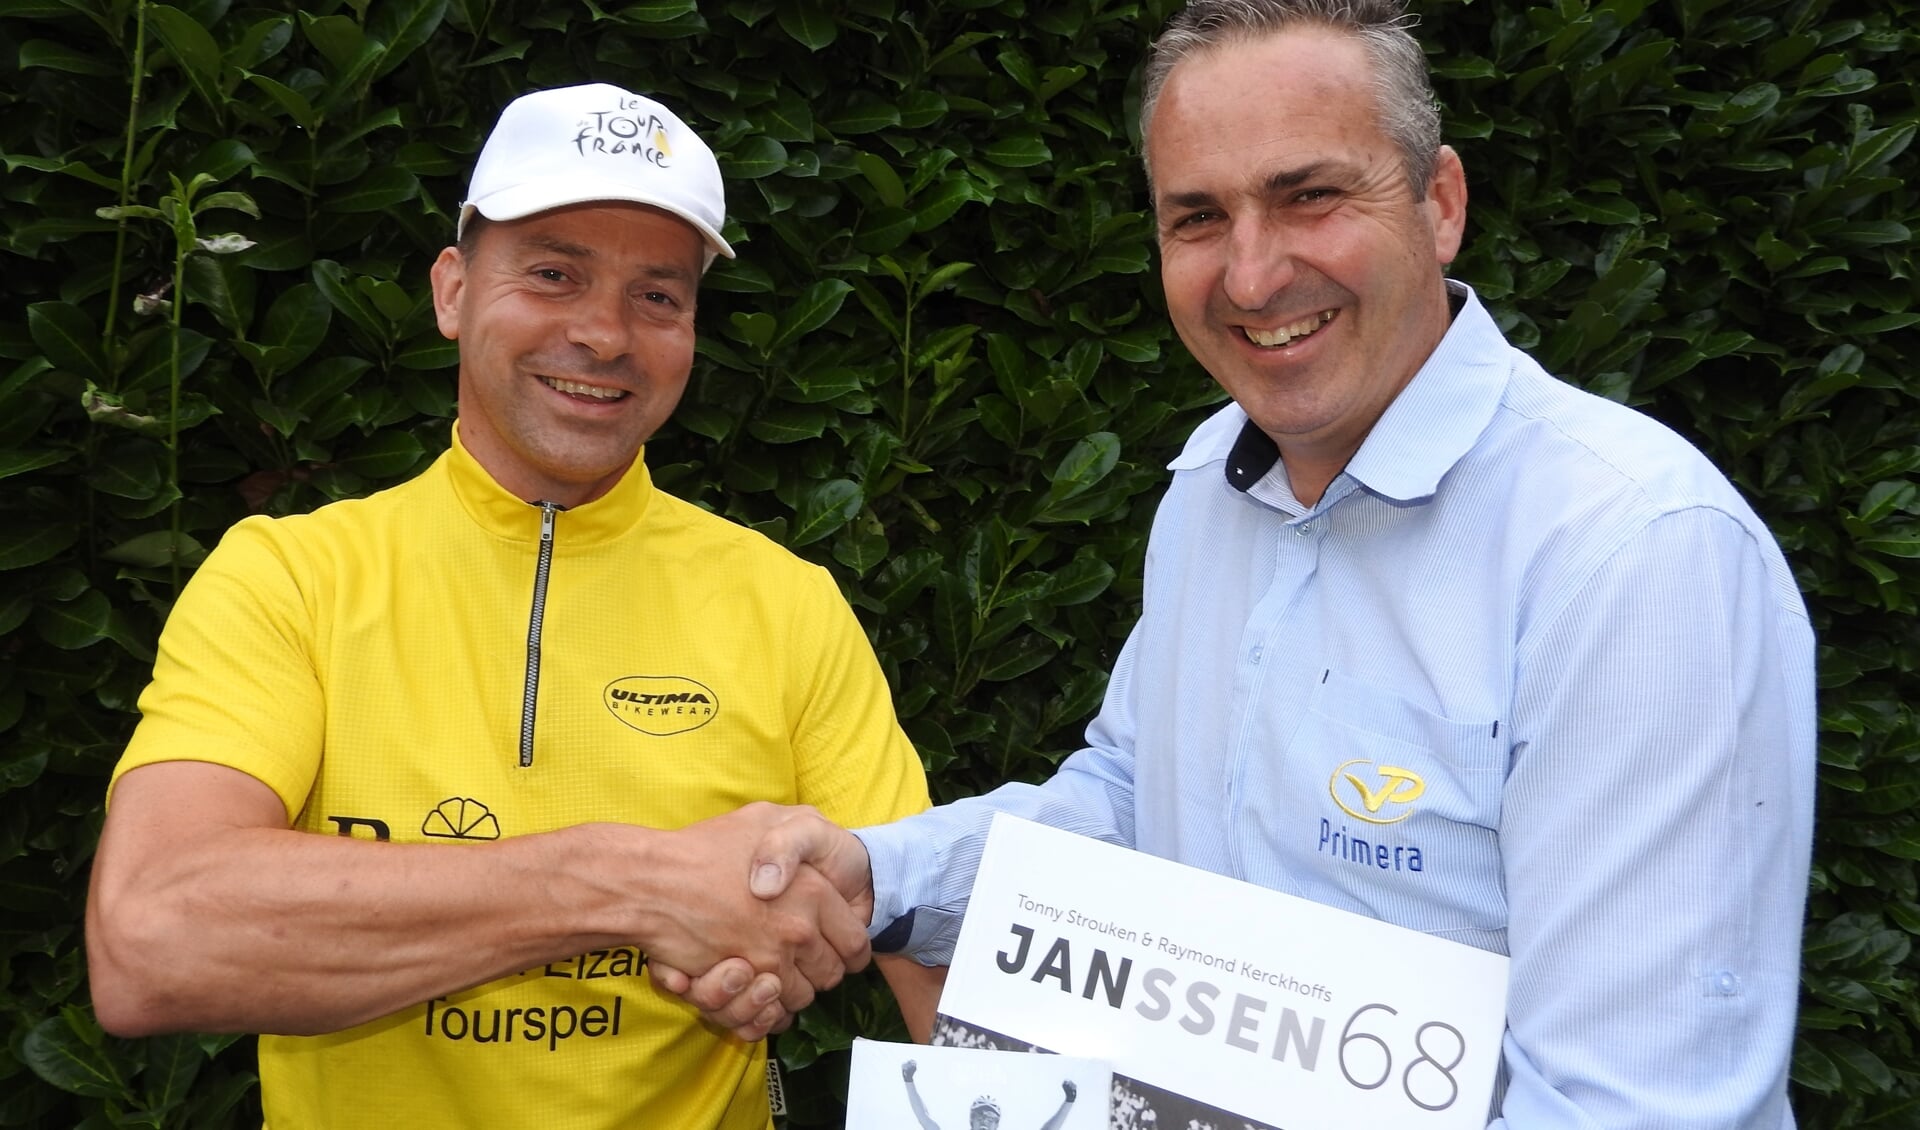 Tourspelwinnaar Eric Goossens wordt gefeliciteerd door Niels van Elzakker.